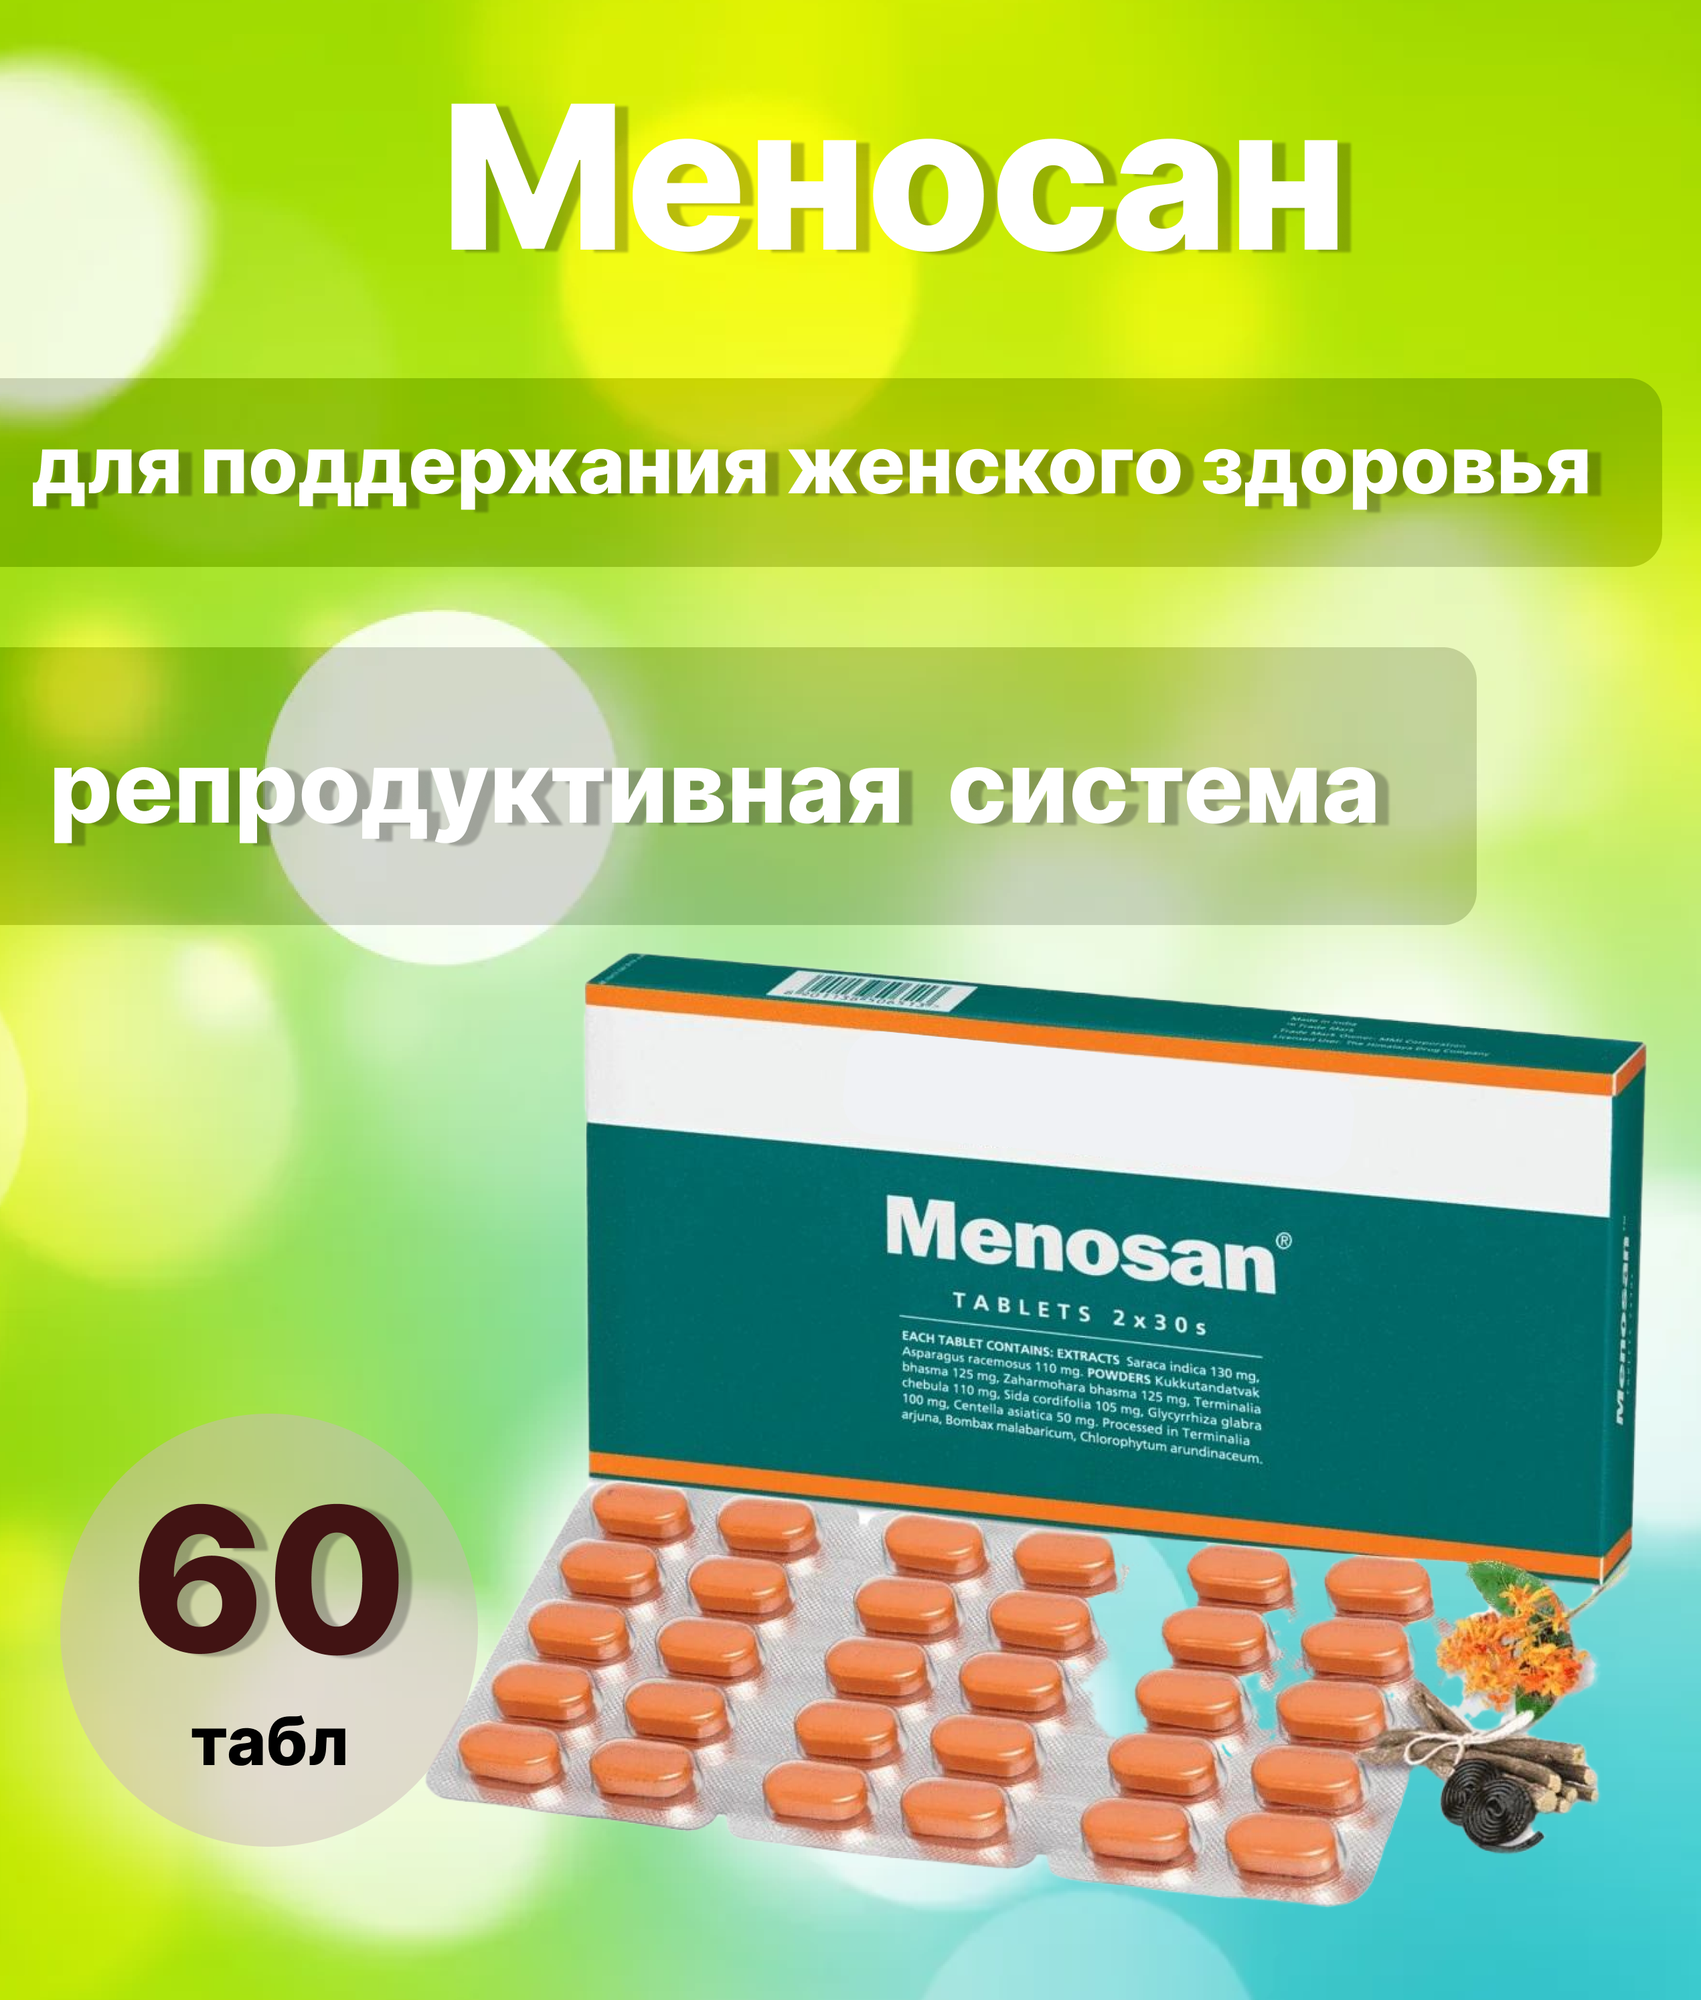 Меносан - для женского здоровья, 60 пилюль